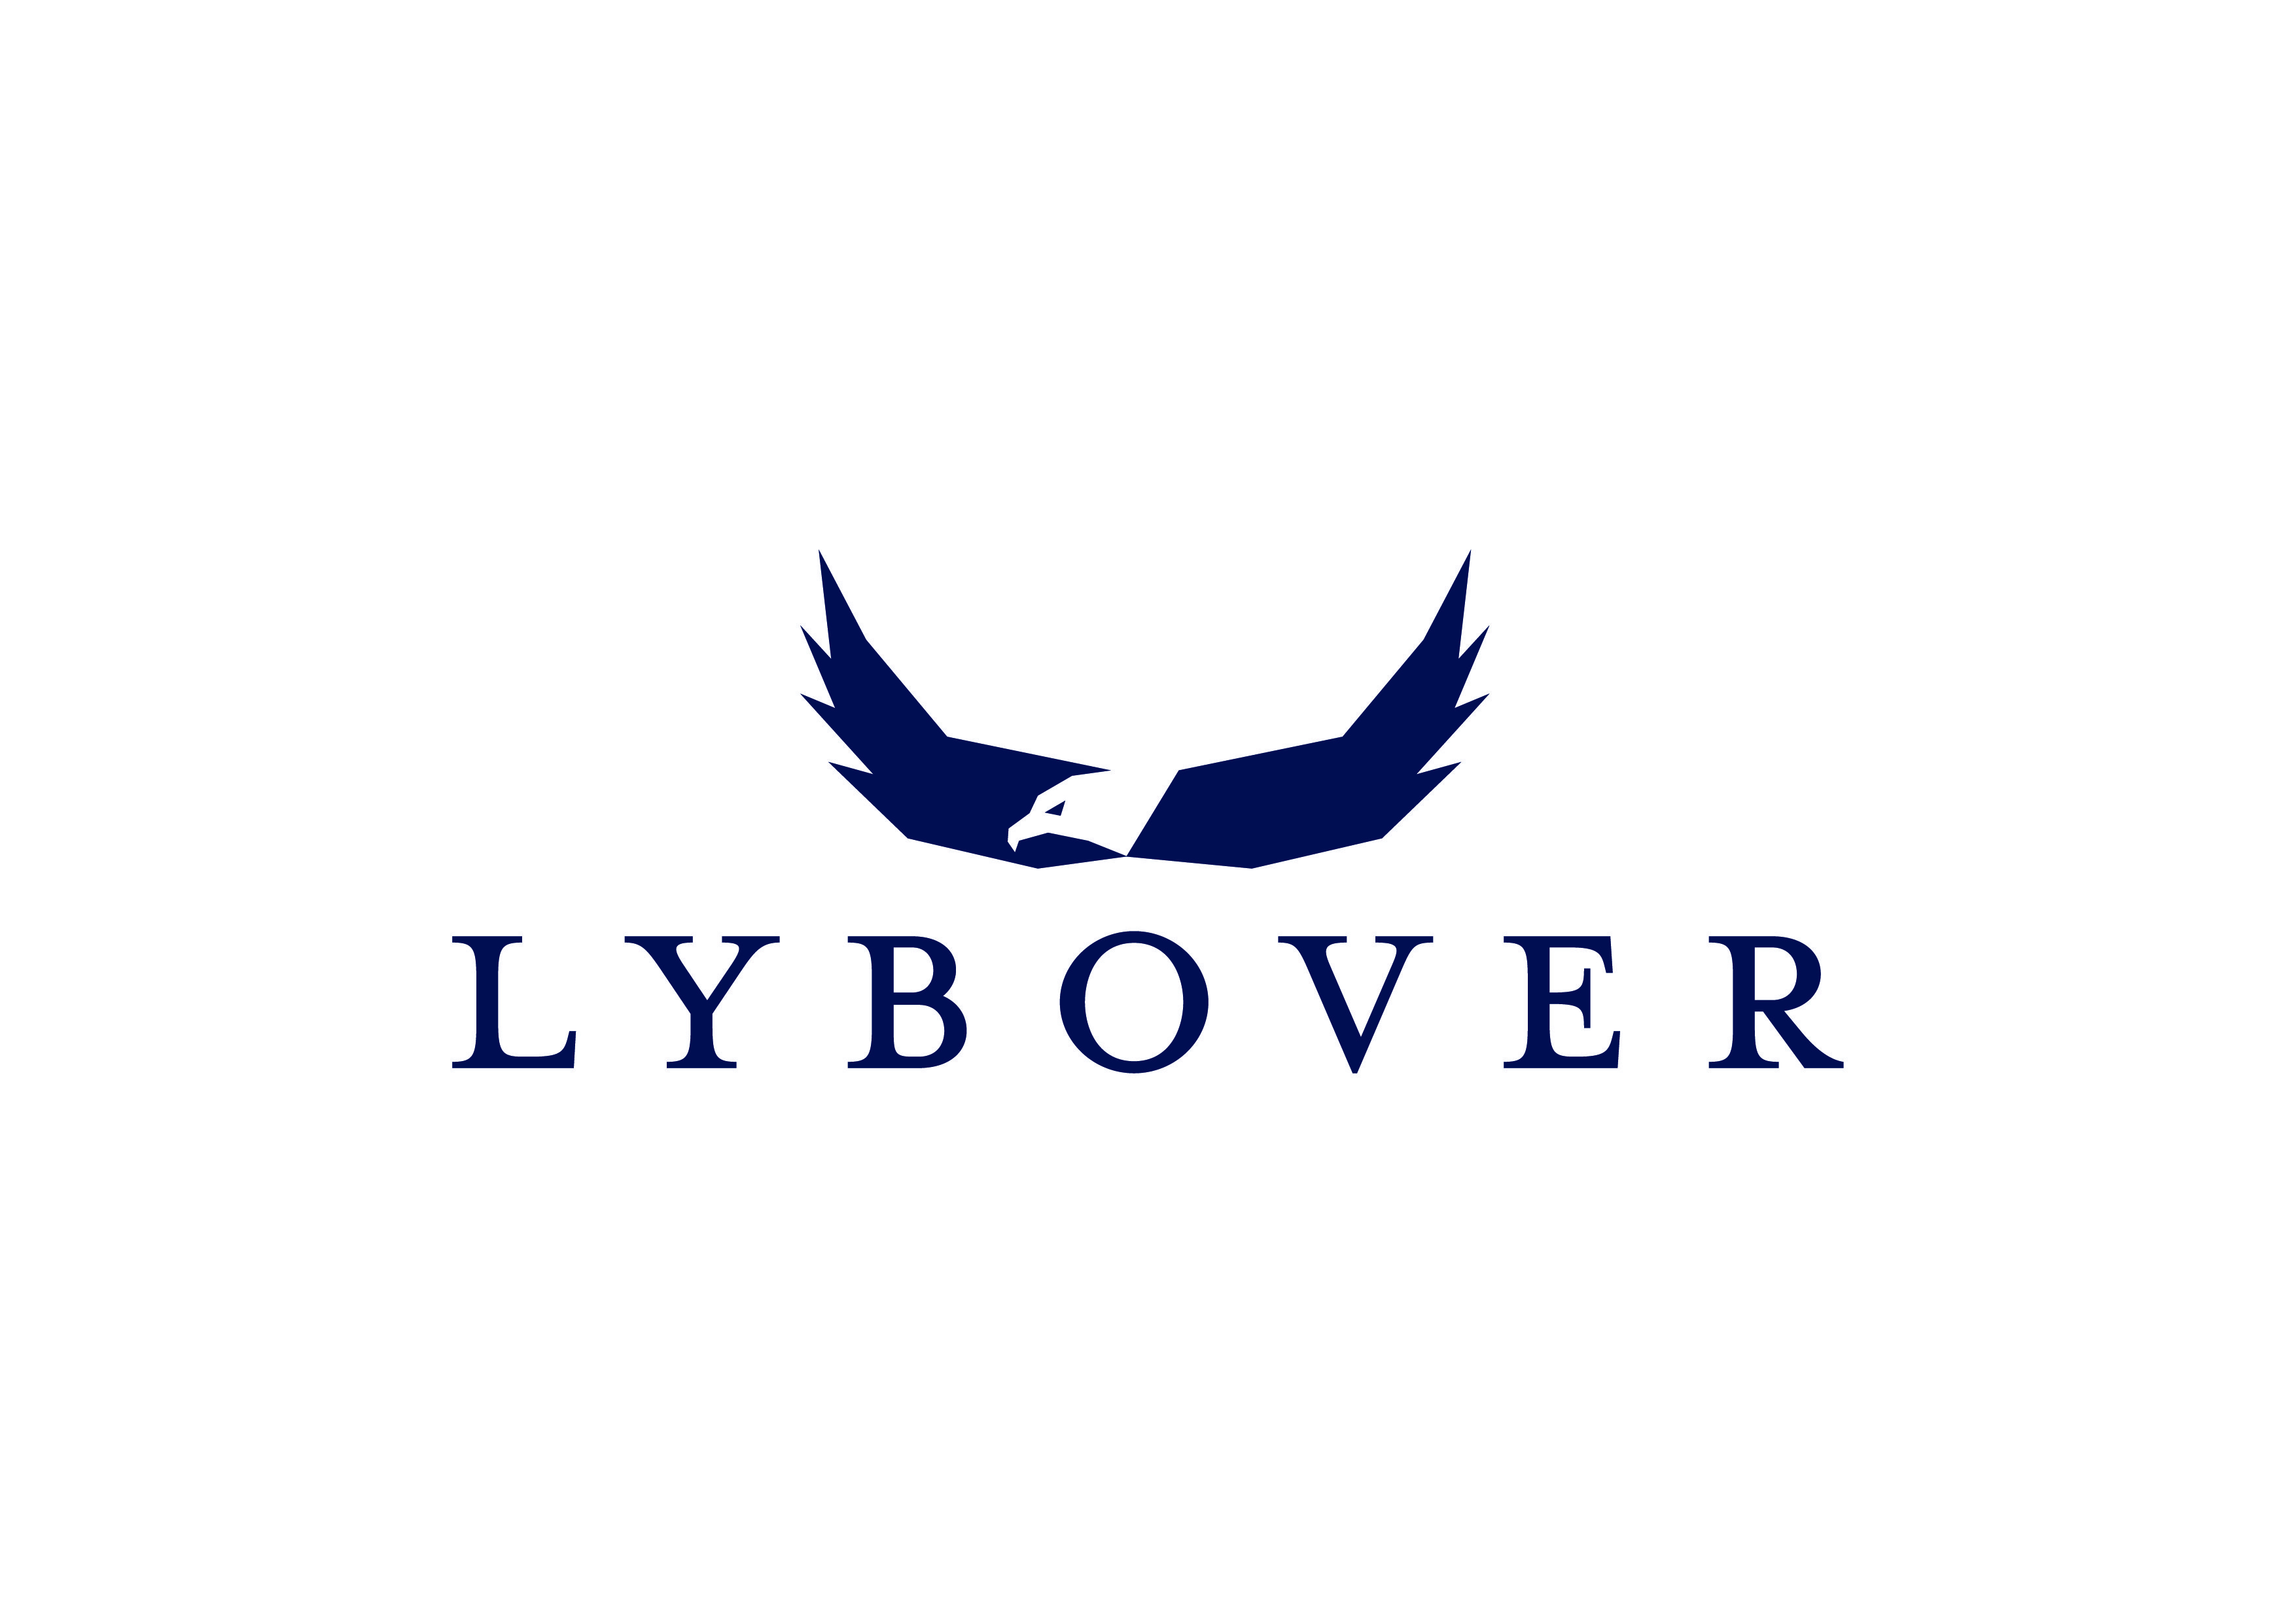 Lybover logo